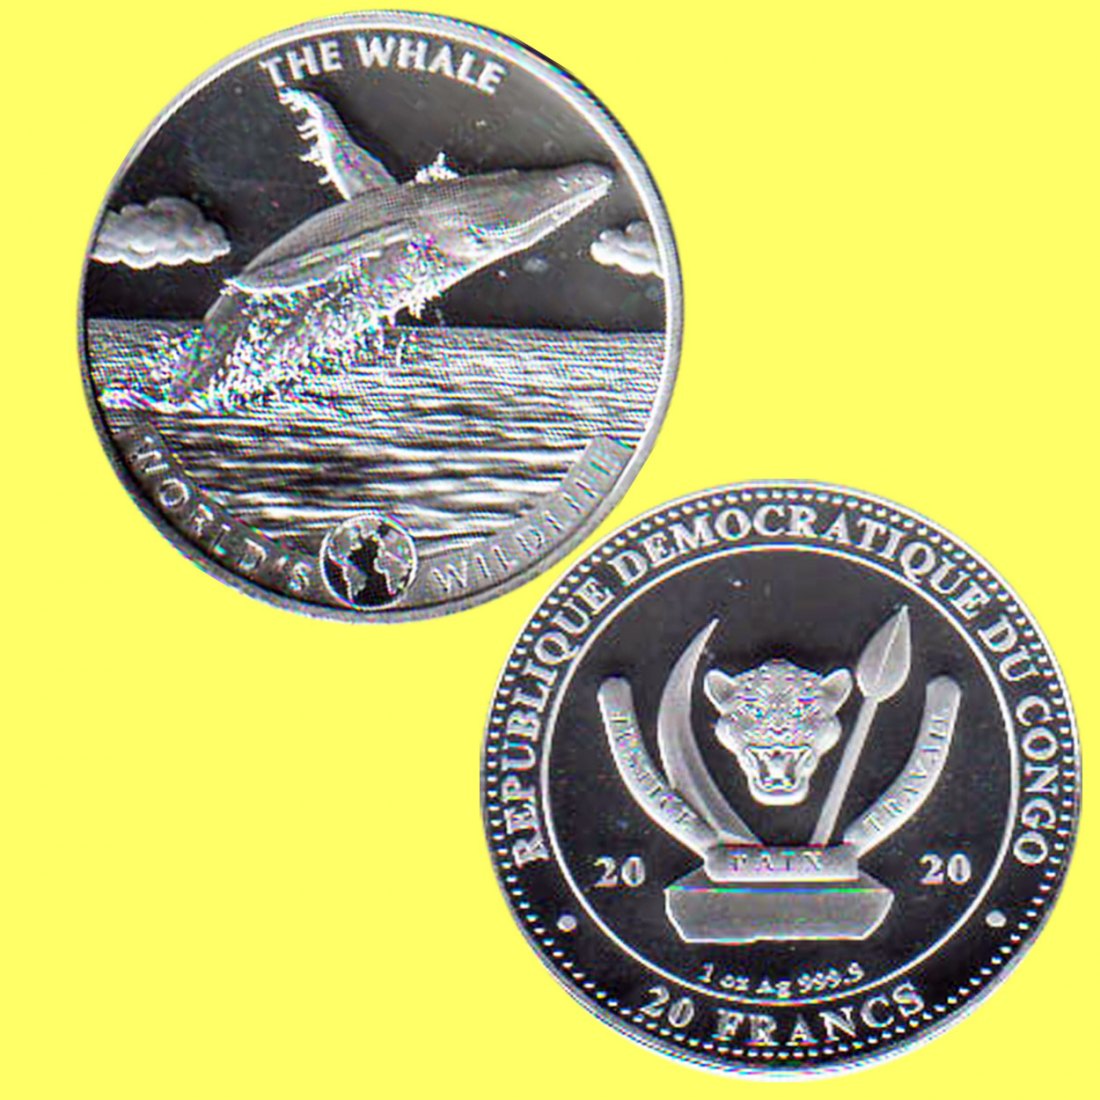  Republik Kongo 20 Francs Silbermünze *World`s Wildlife - Wale* 2020 1oz Silber nur 30.000St!   